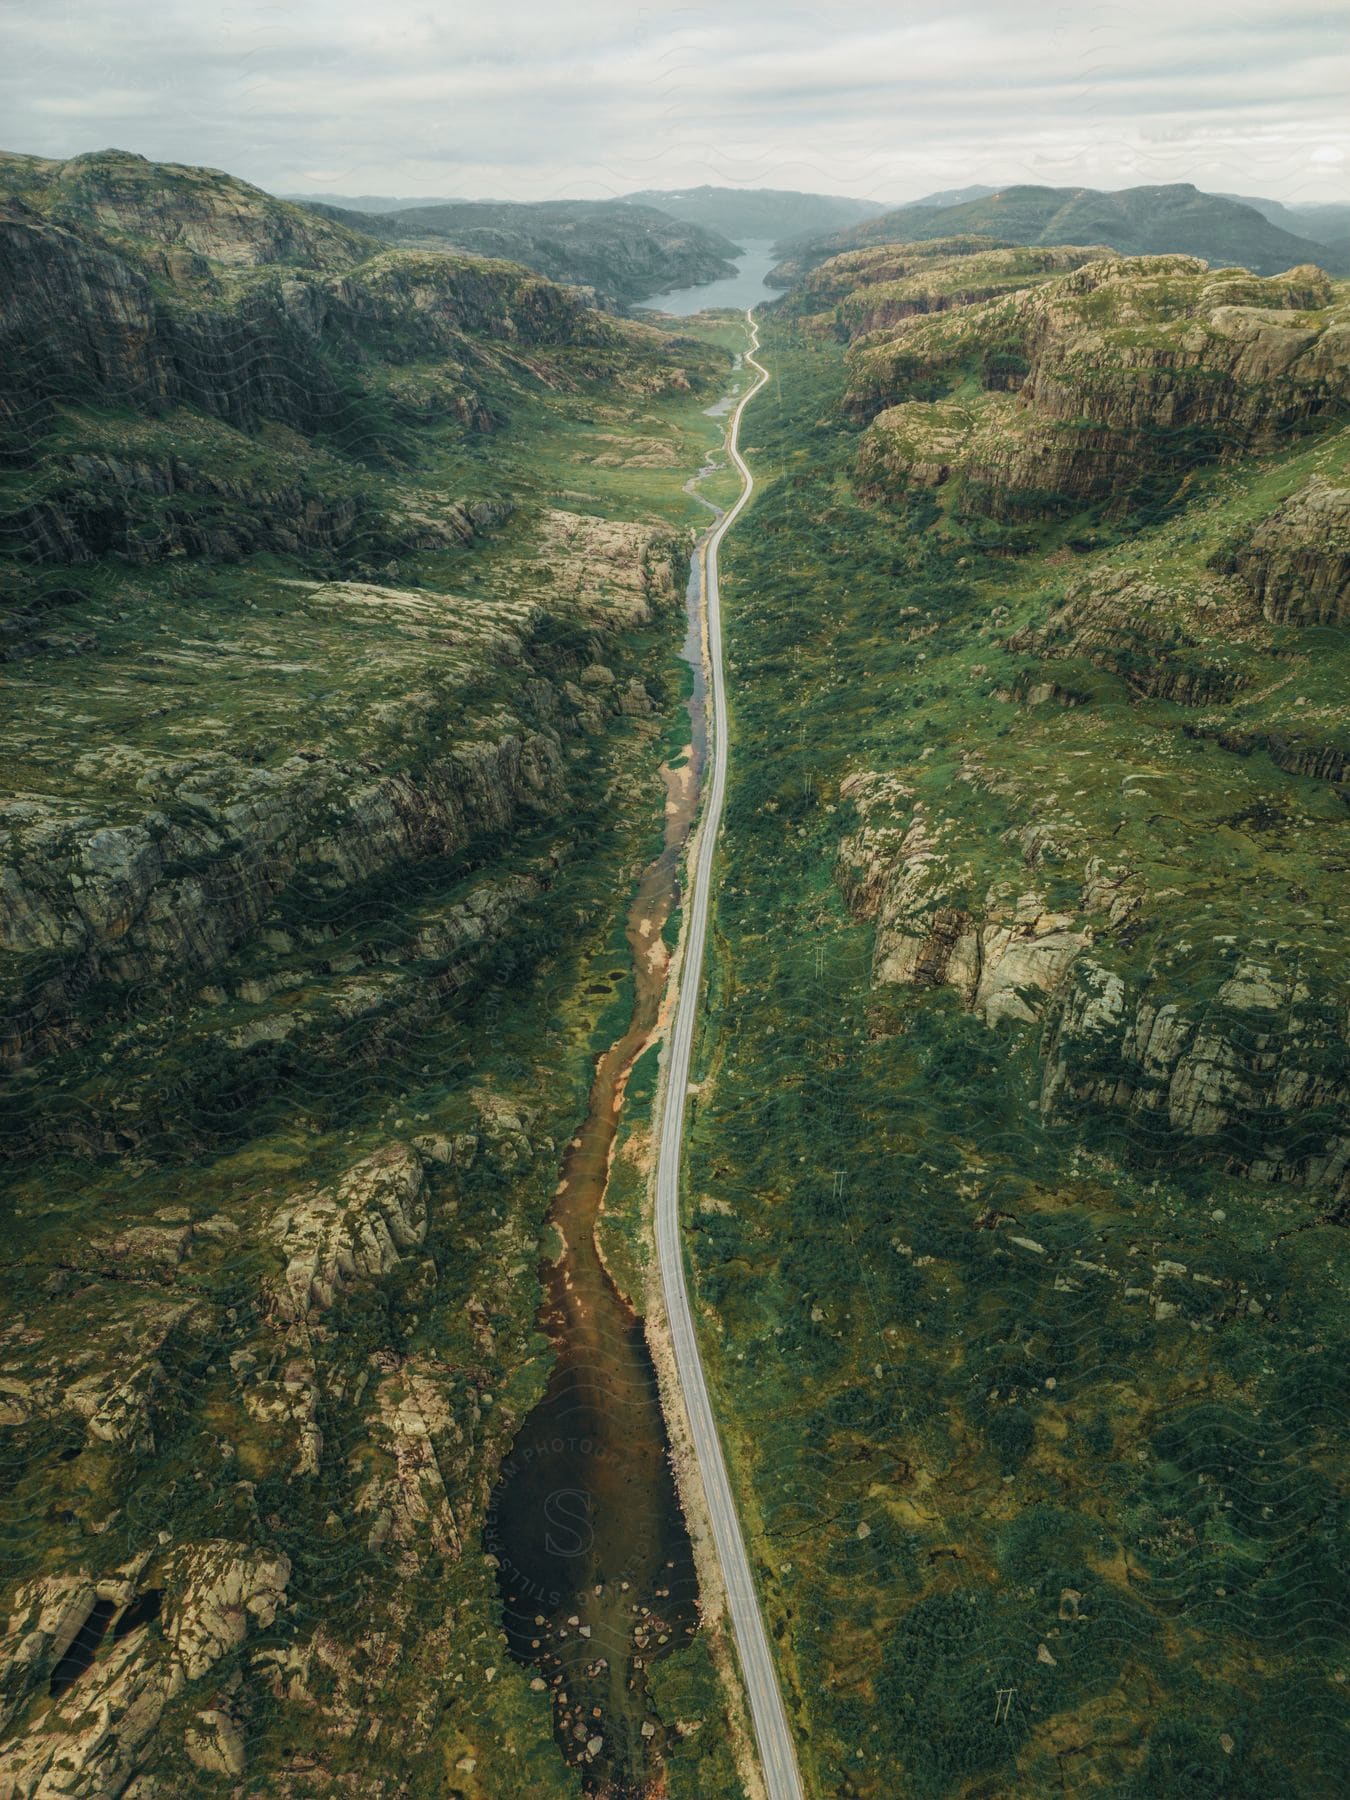 A stream runs along a long empty road through a mountain valley under a cloudy sky